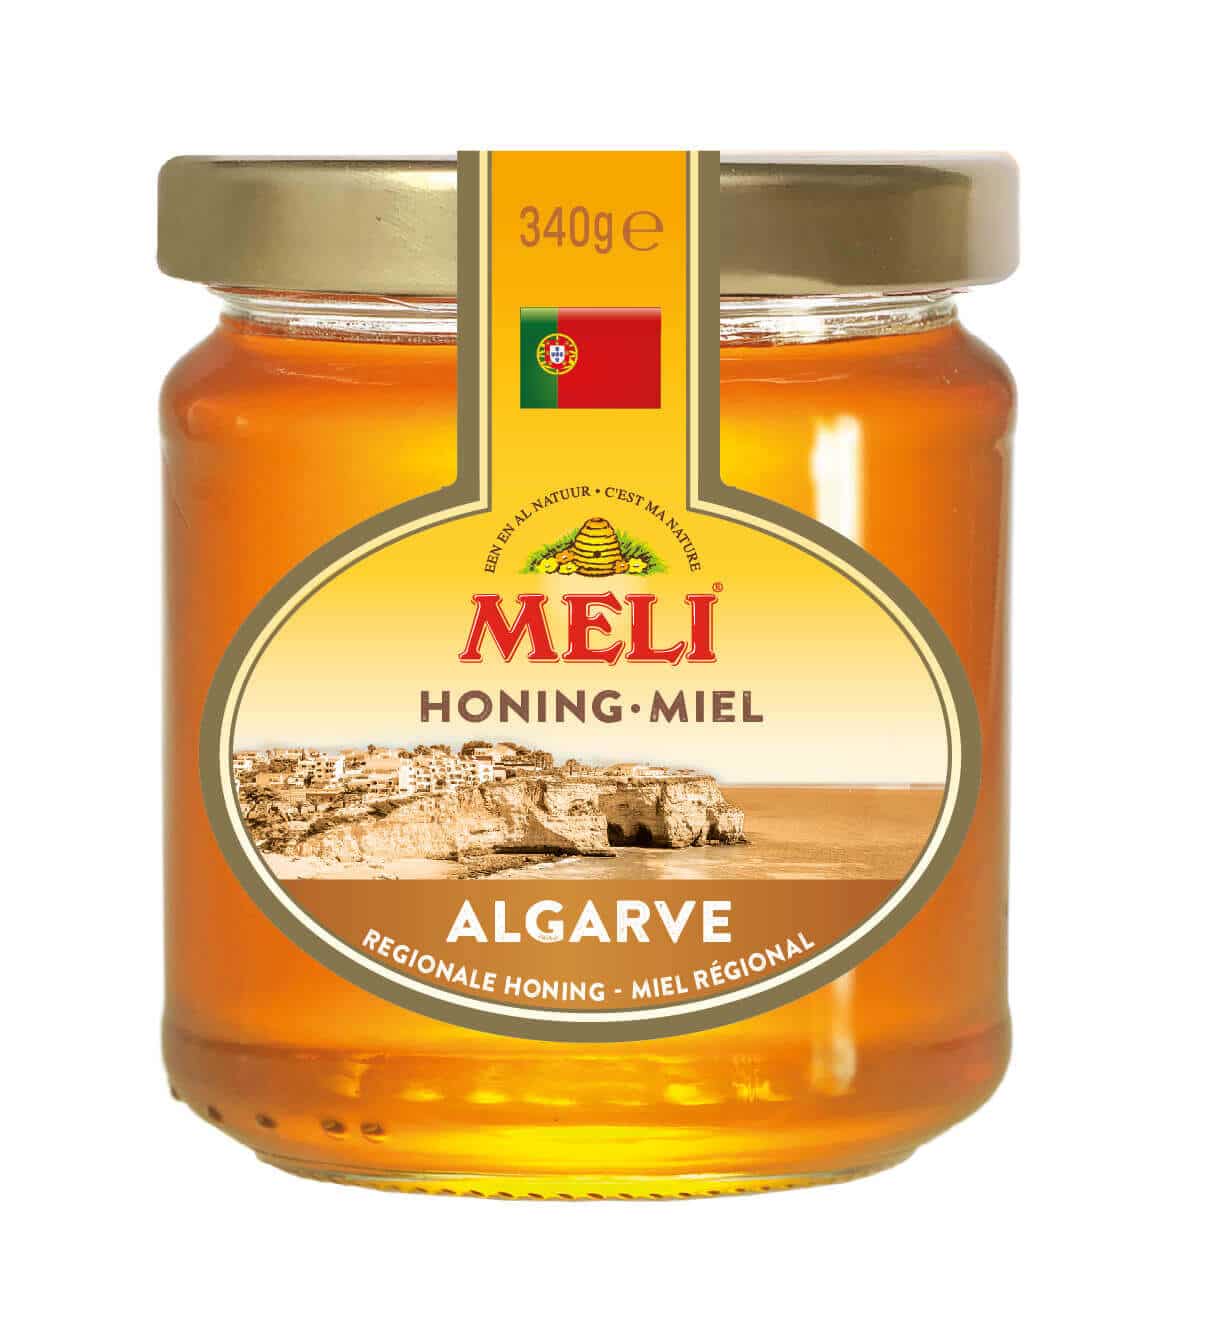 Algarve Honing - Miel